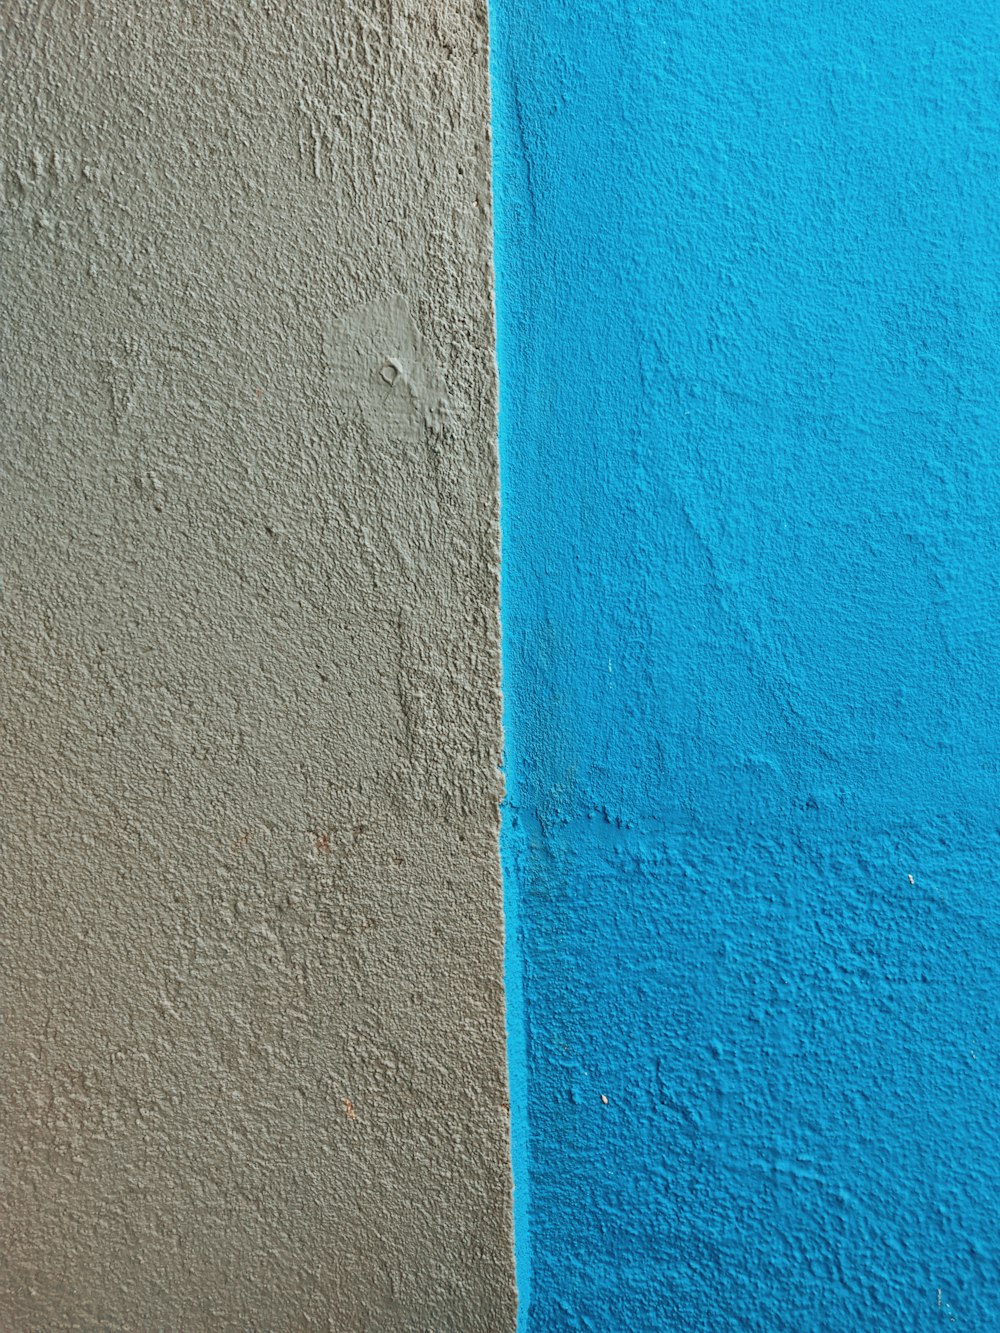 blau und orange gestrichene Wand